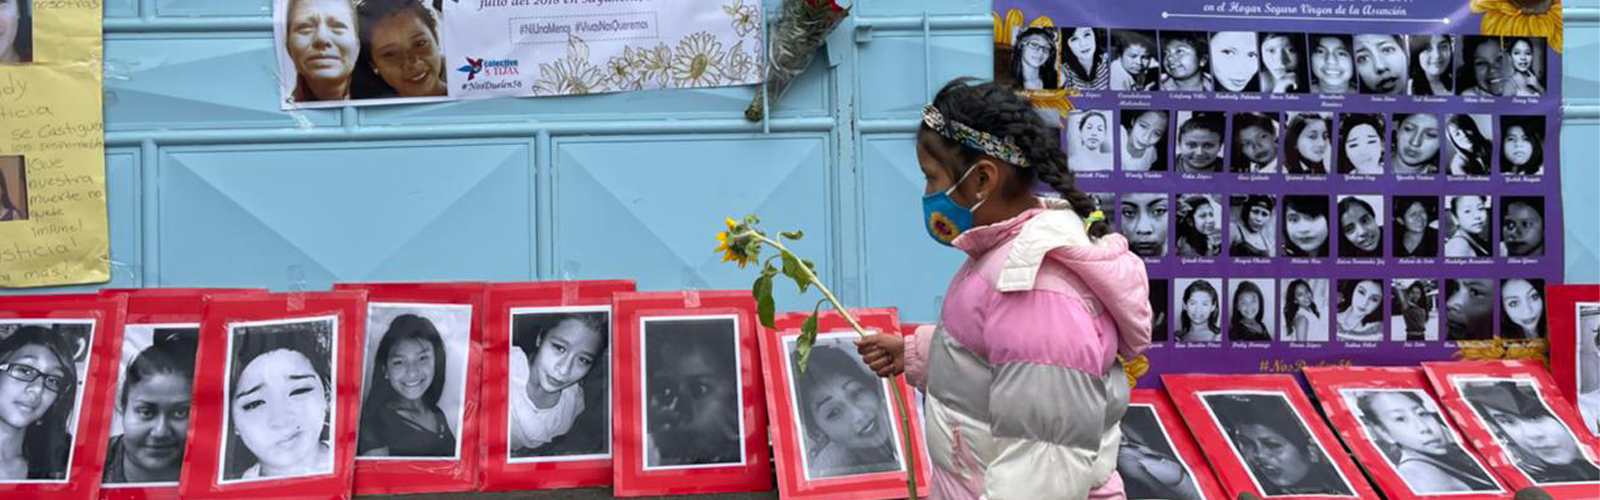 Vigente, una denuncia que criminaliza a 15 sobrevivientes del incendio en Hogar Virgen de la Asunción